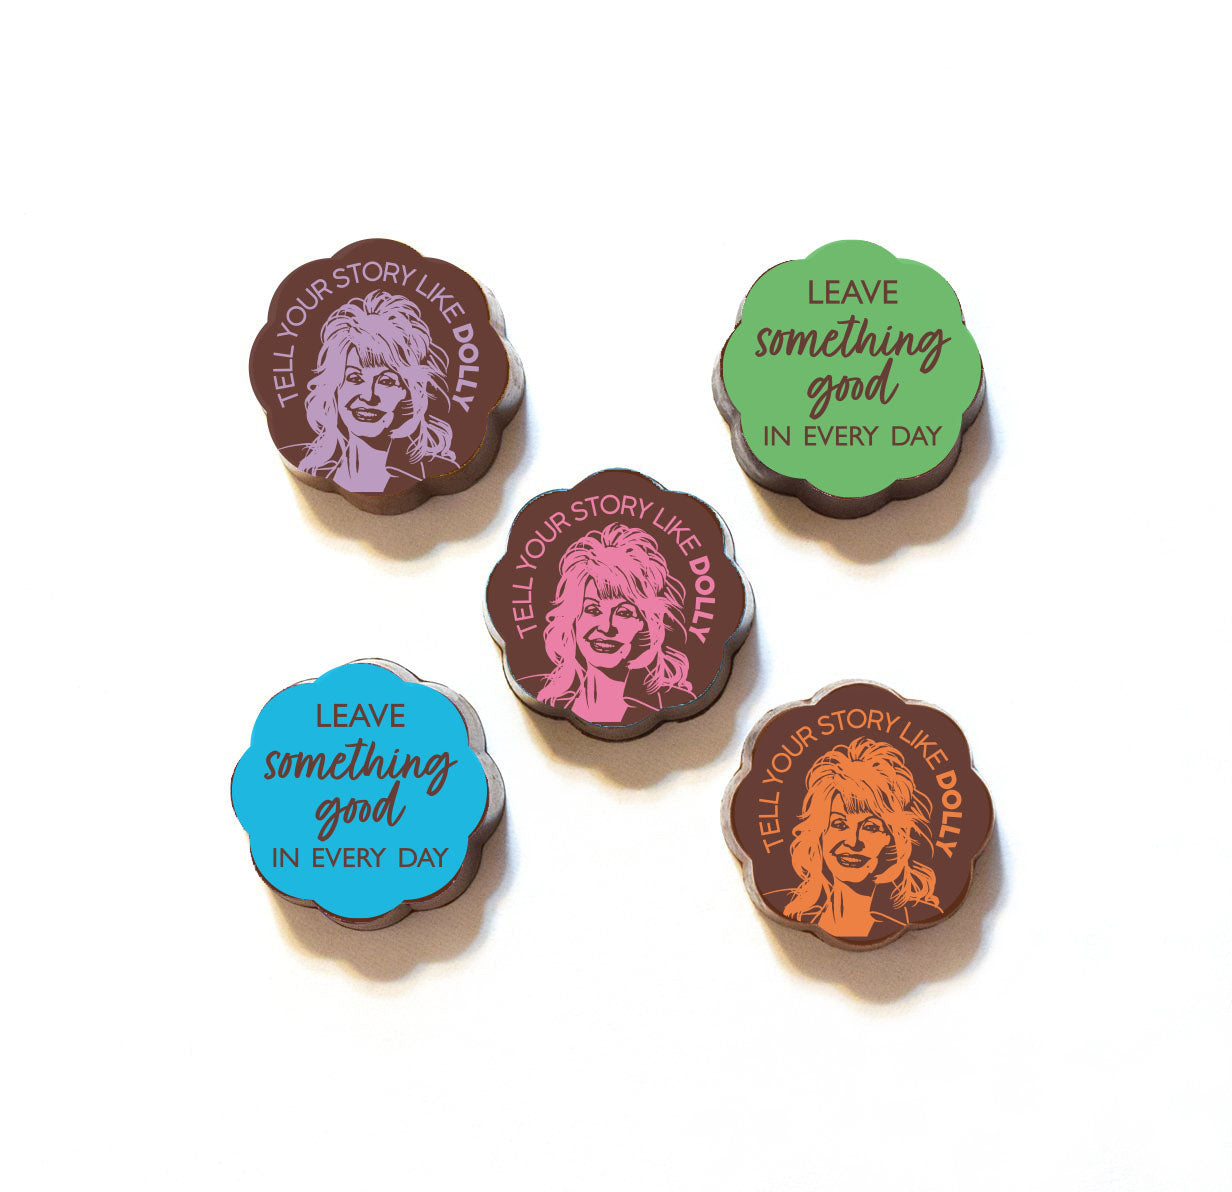 Dolly Parton Fan Club Chocolates